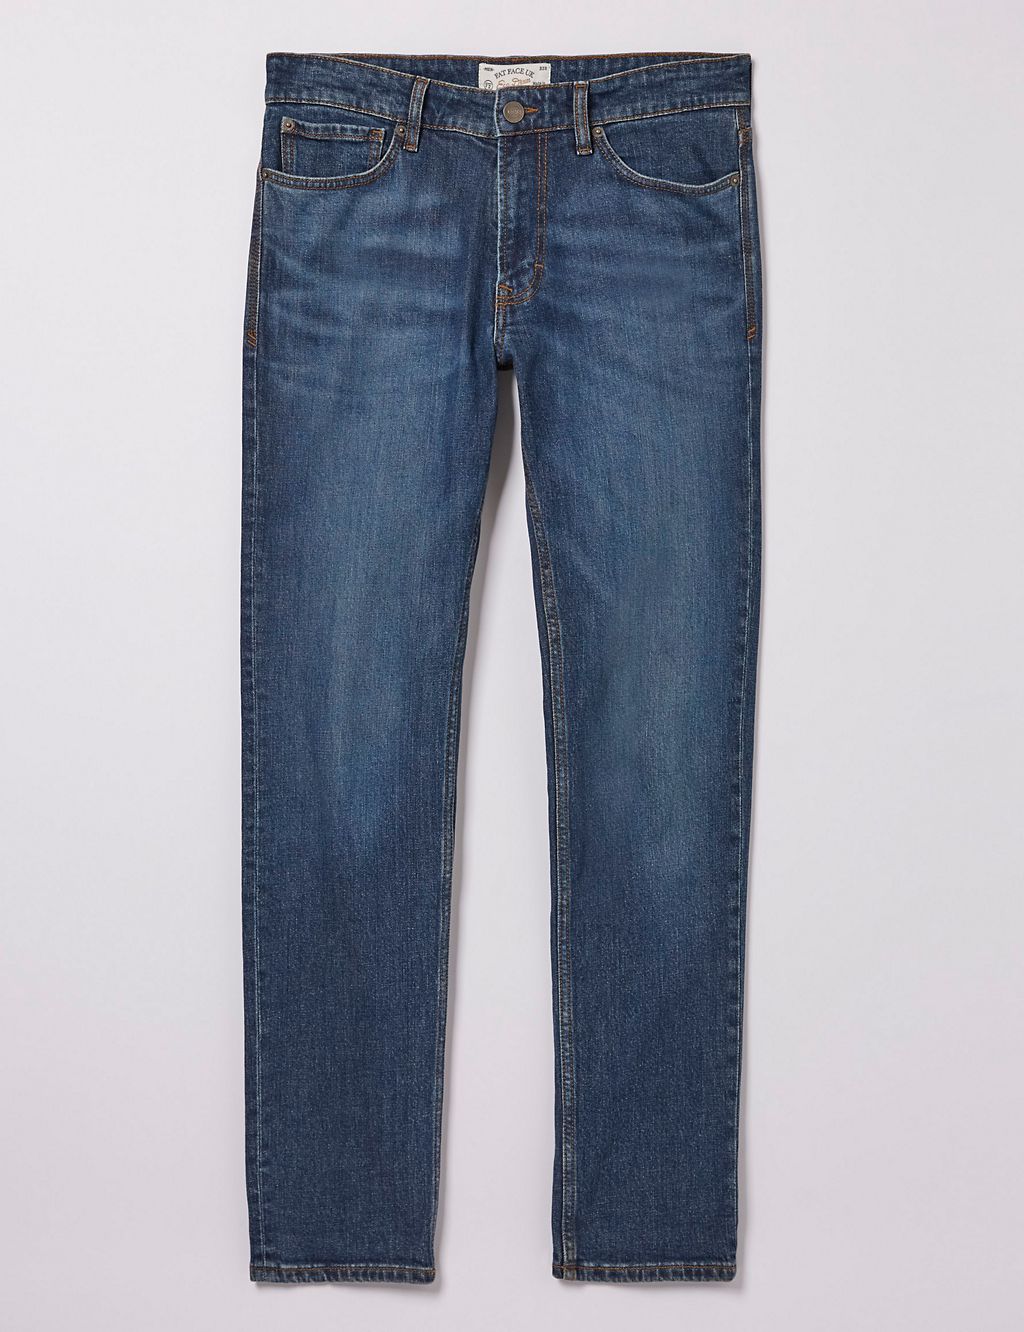 Slim Fit 5 Pocket Jeans 1 of 4